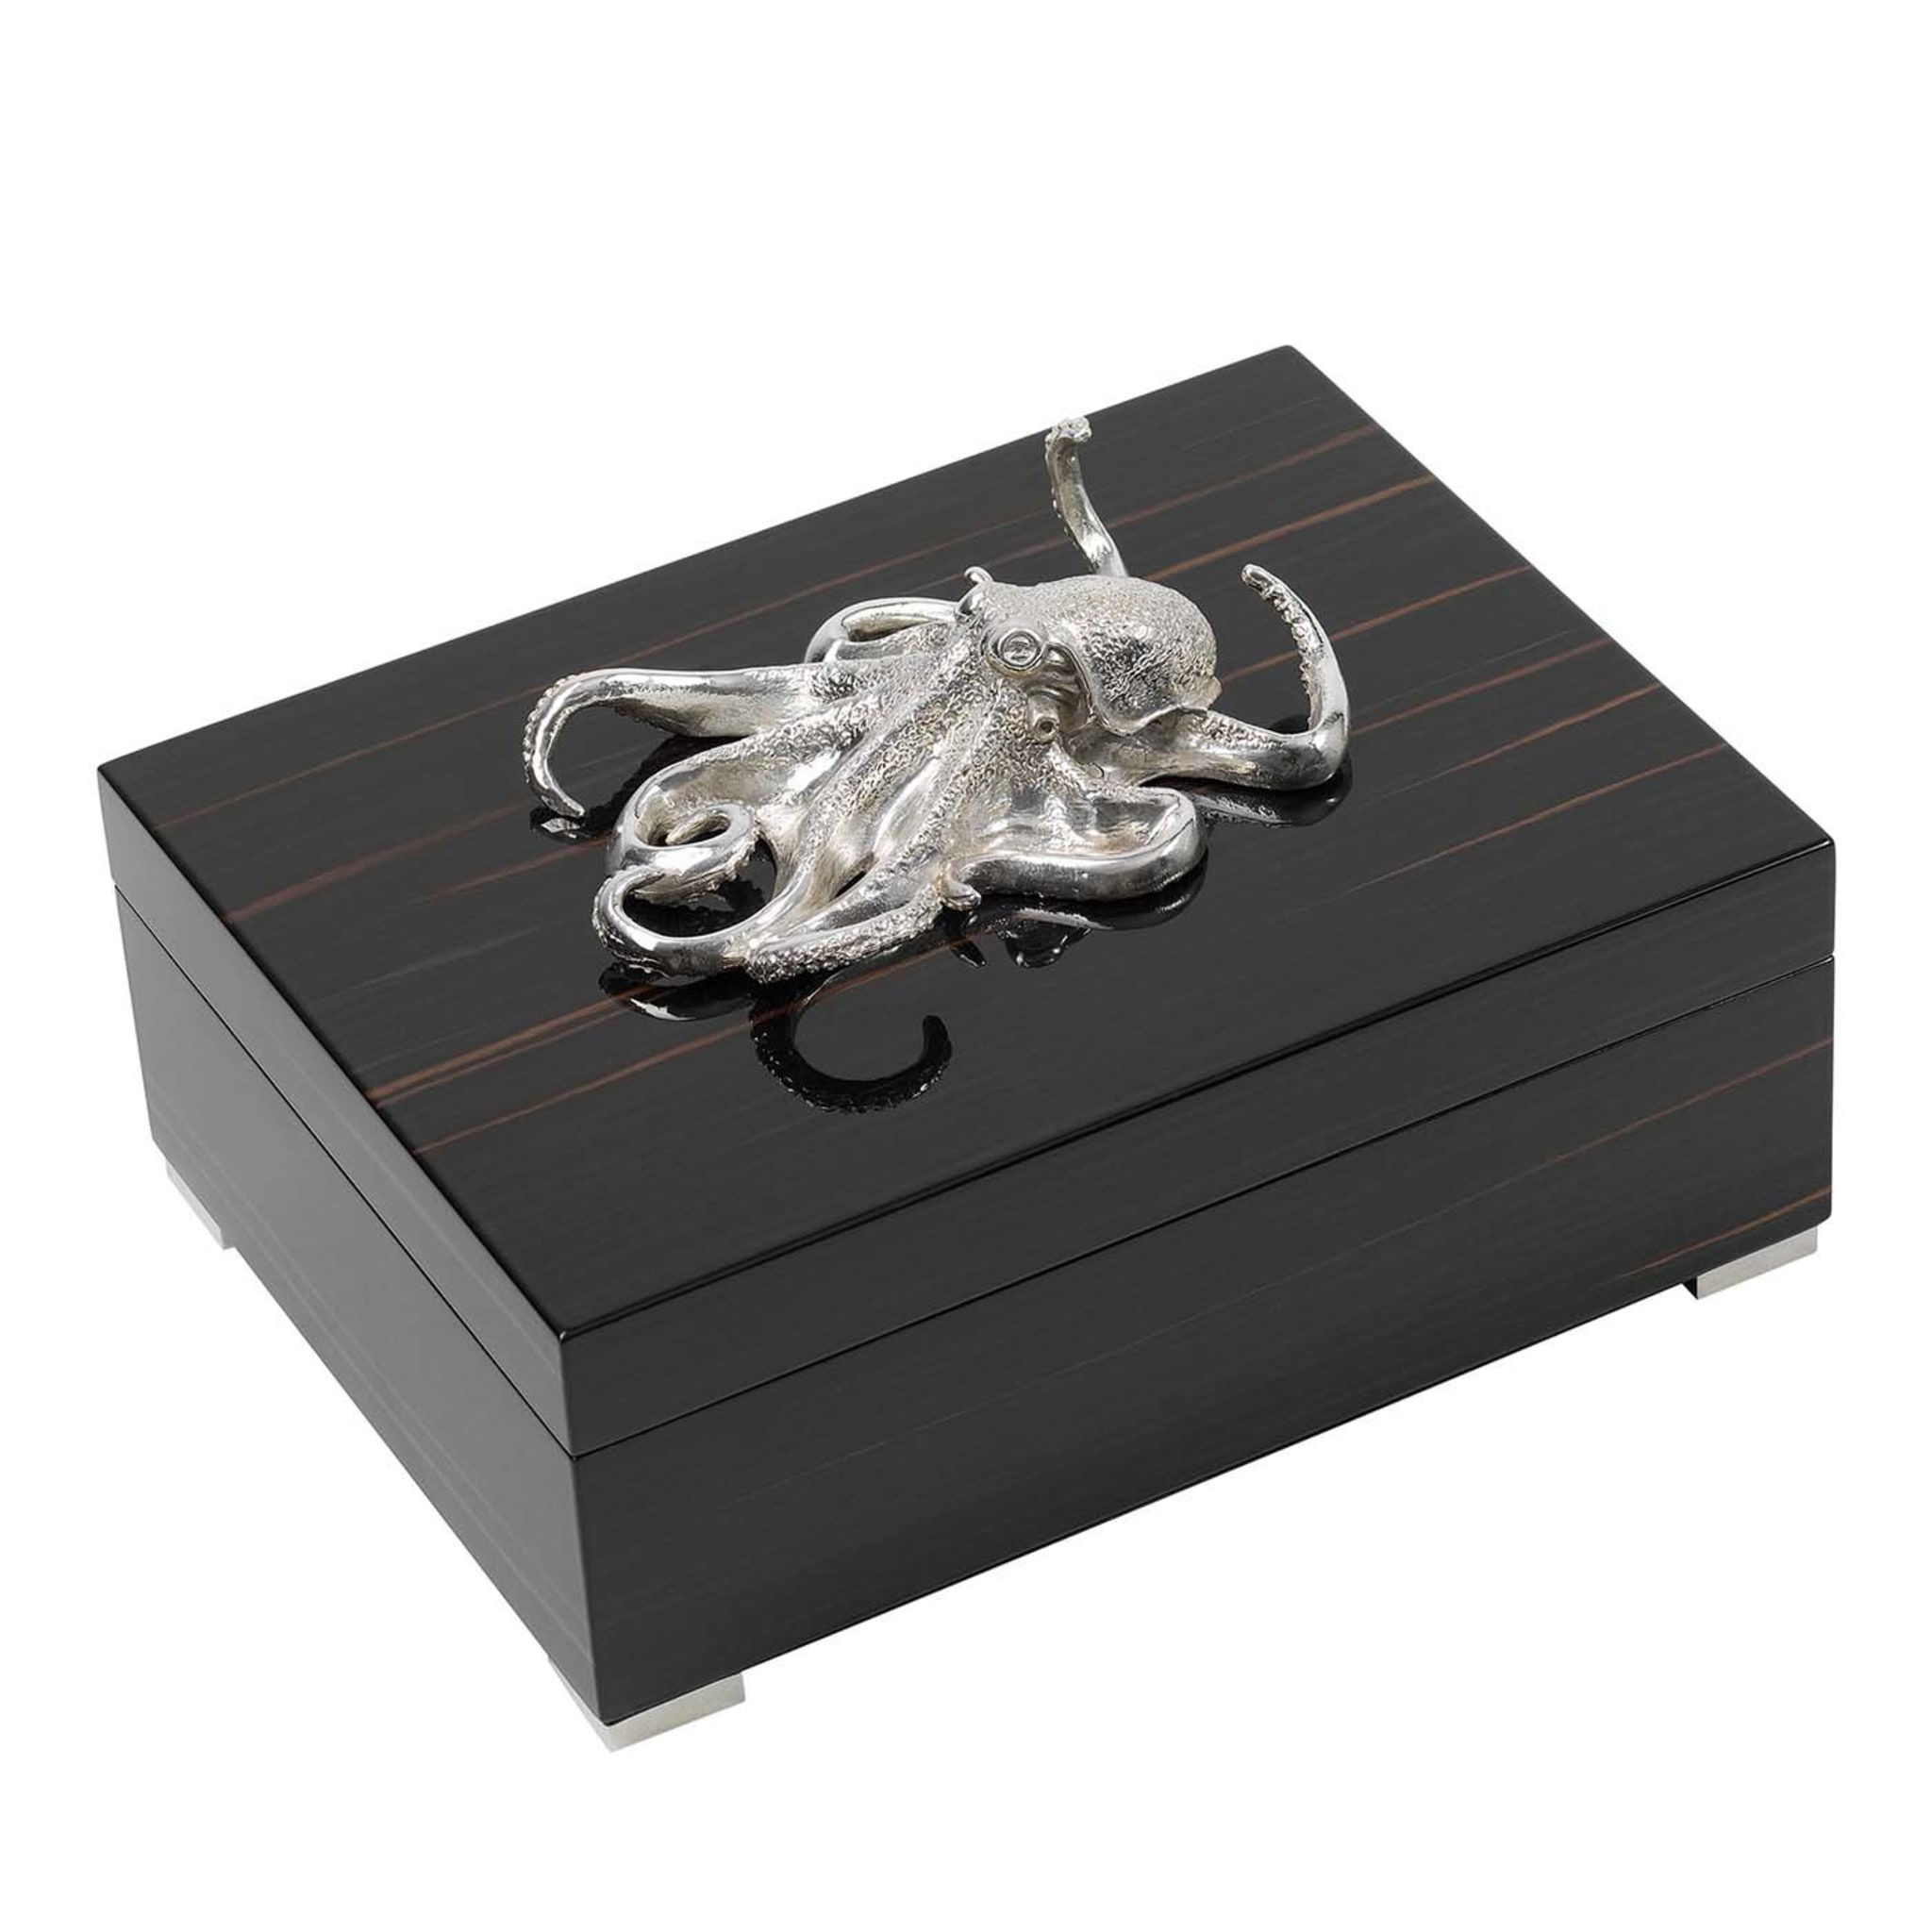 Rechteckige Box aus Ebenholz mit silbernem Oktopus - Hauptansicht